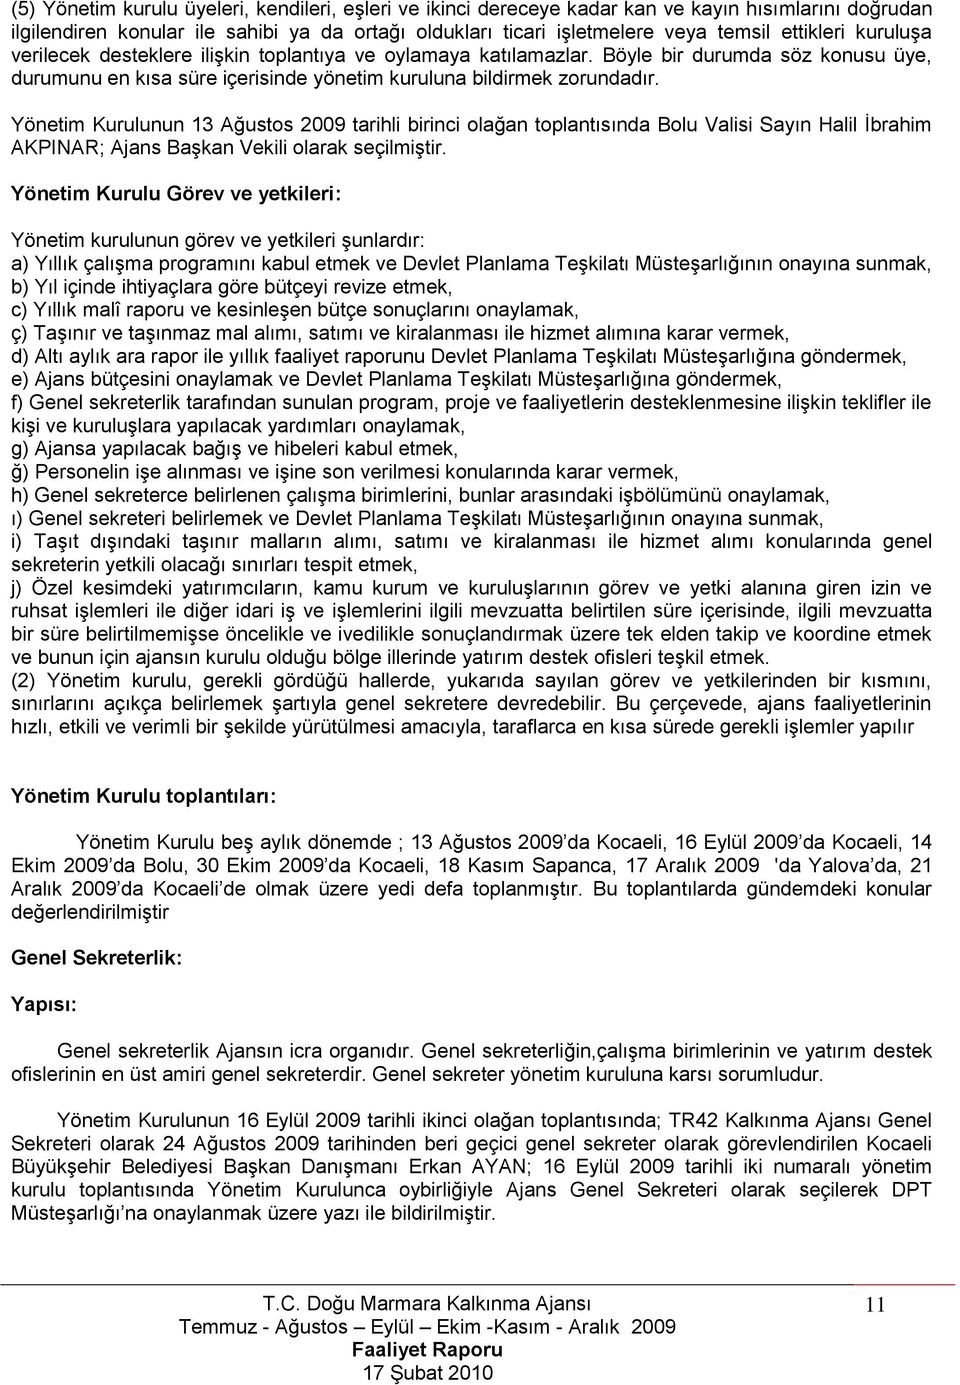 Yönetim Kurulunun 13 Ağustos 2009 tarihli birinci olağan toplantısında Bolu Valisi Sayın Halil Ġbrahim AKPINAR; Ajans BaĢkan Vekili olarak seçilmiģtir.